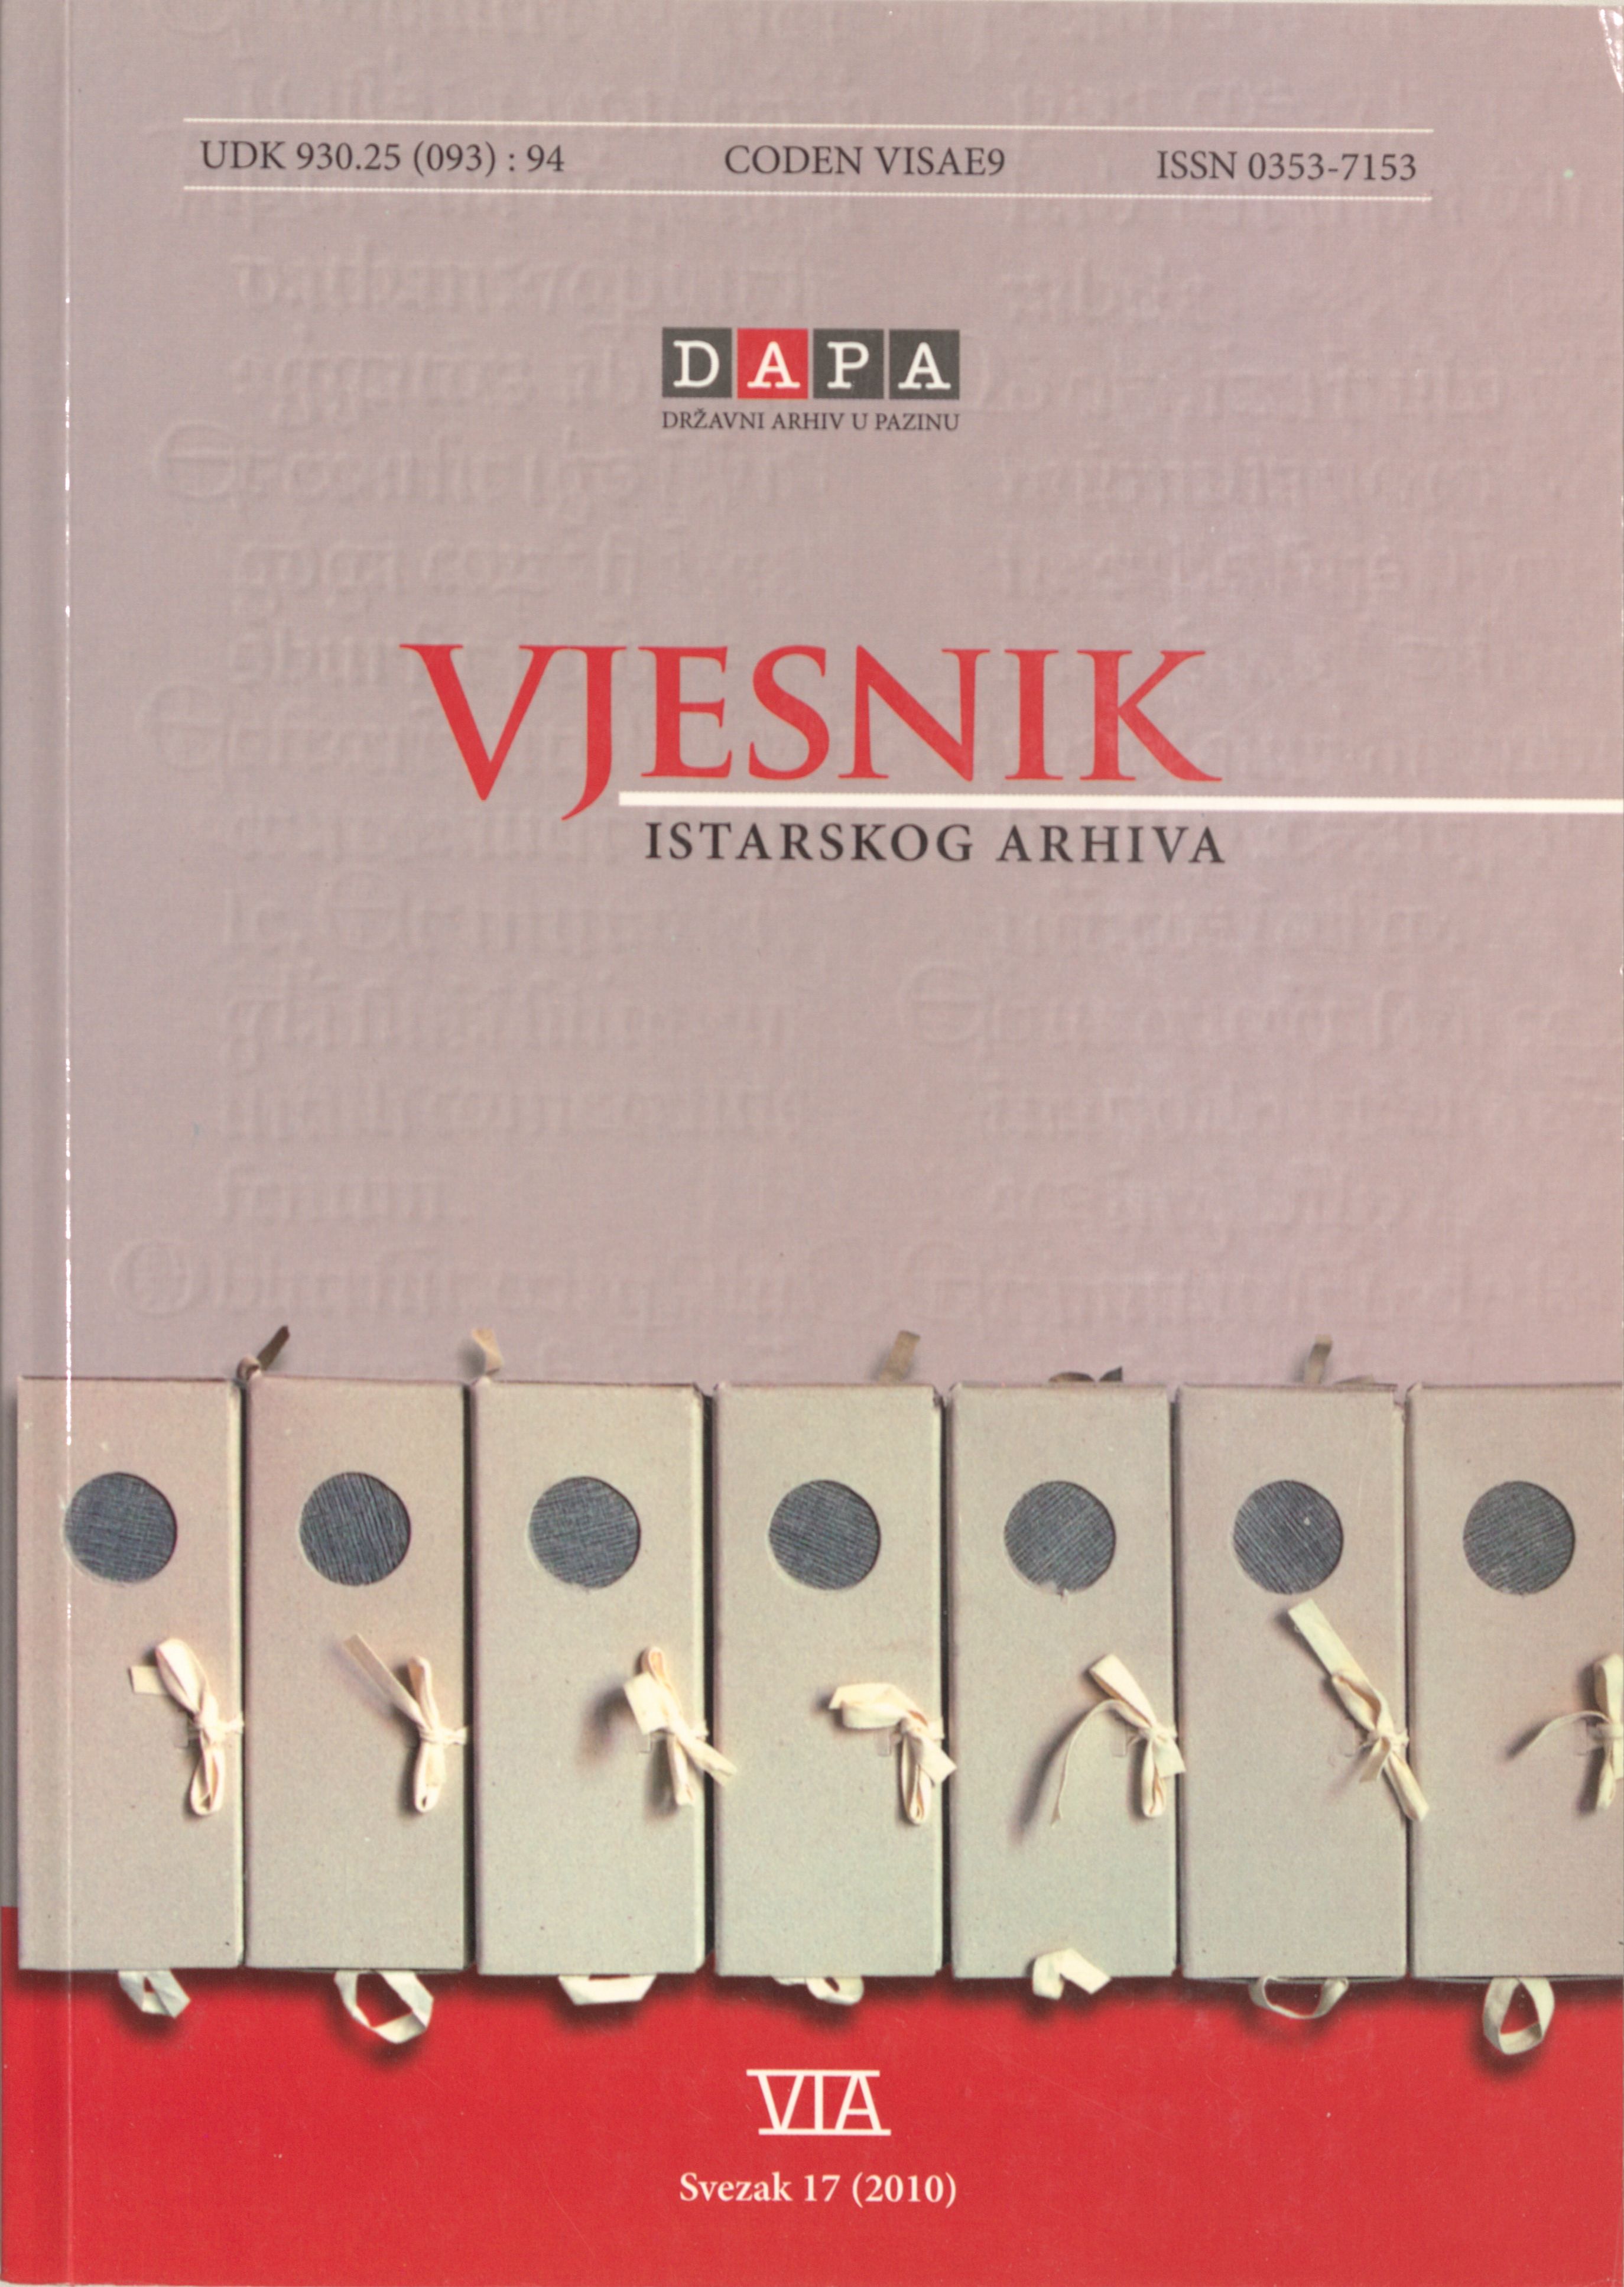 					Pogledaj Vjesnik istarskog arhiva sv. 17 (2010.)
				